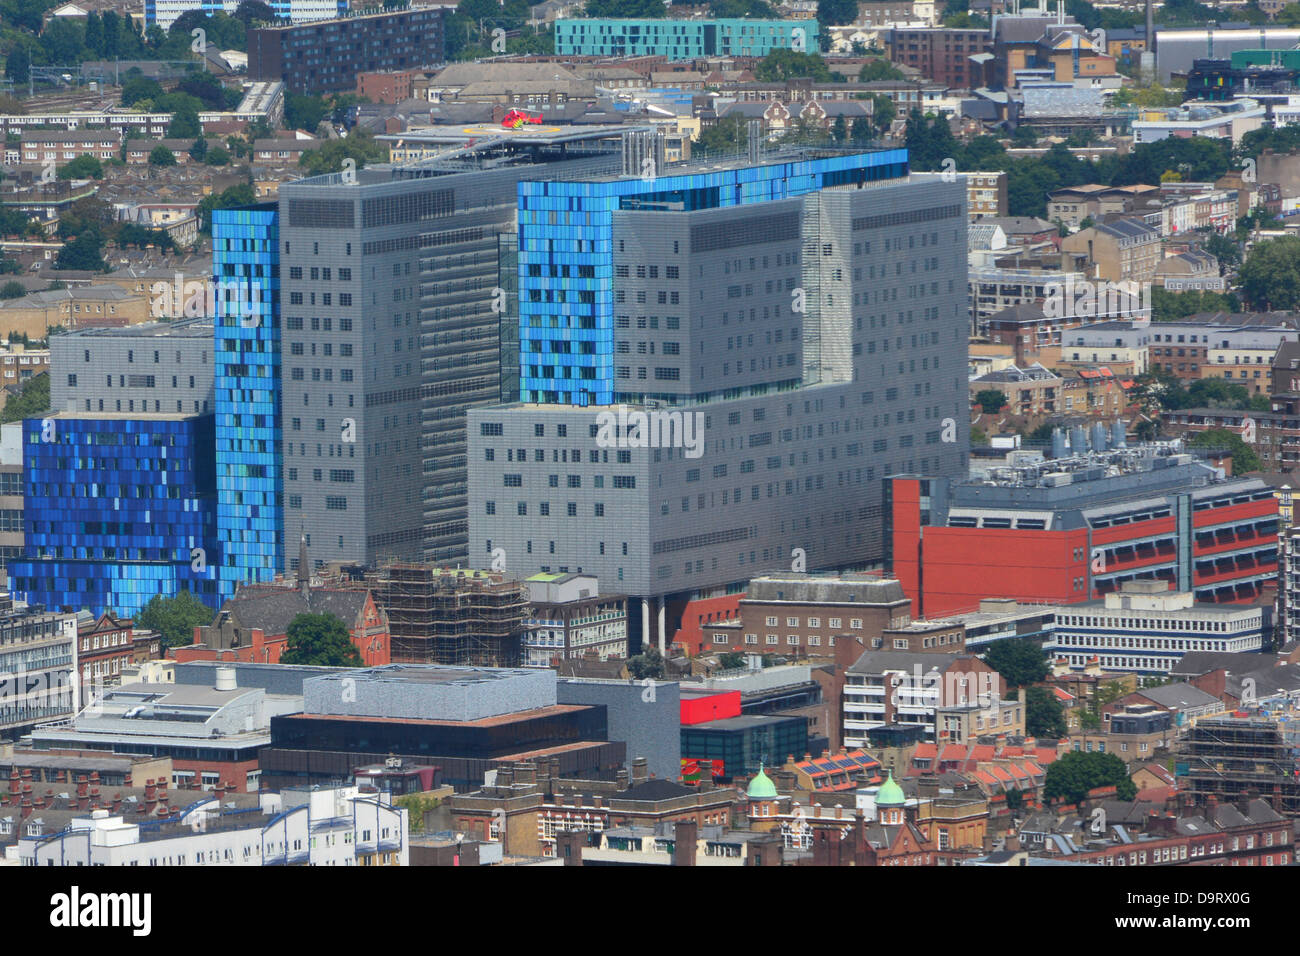 Nouveau Royal London Hospital vue aérienne (construite dans le cadre d'un régime privé (Private Finance Initiative) Banque D'Images